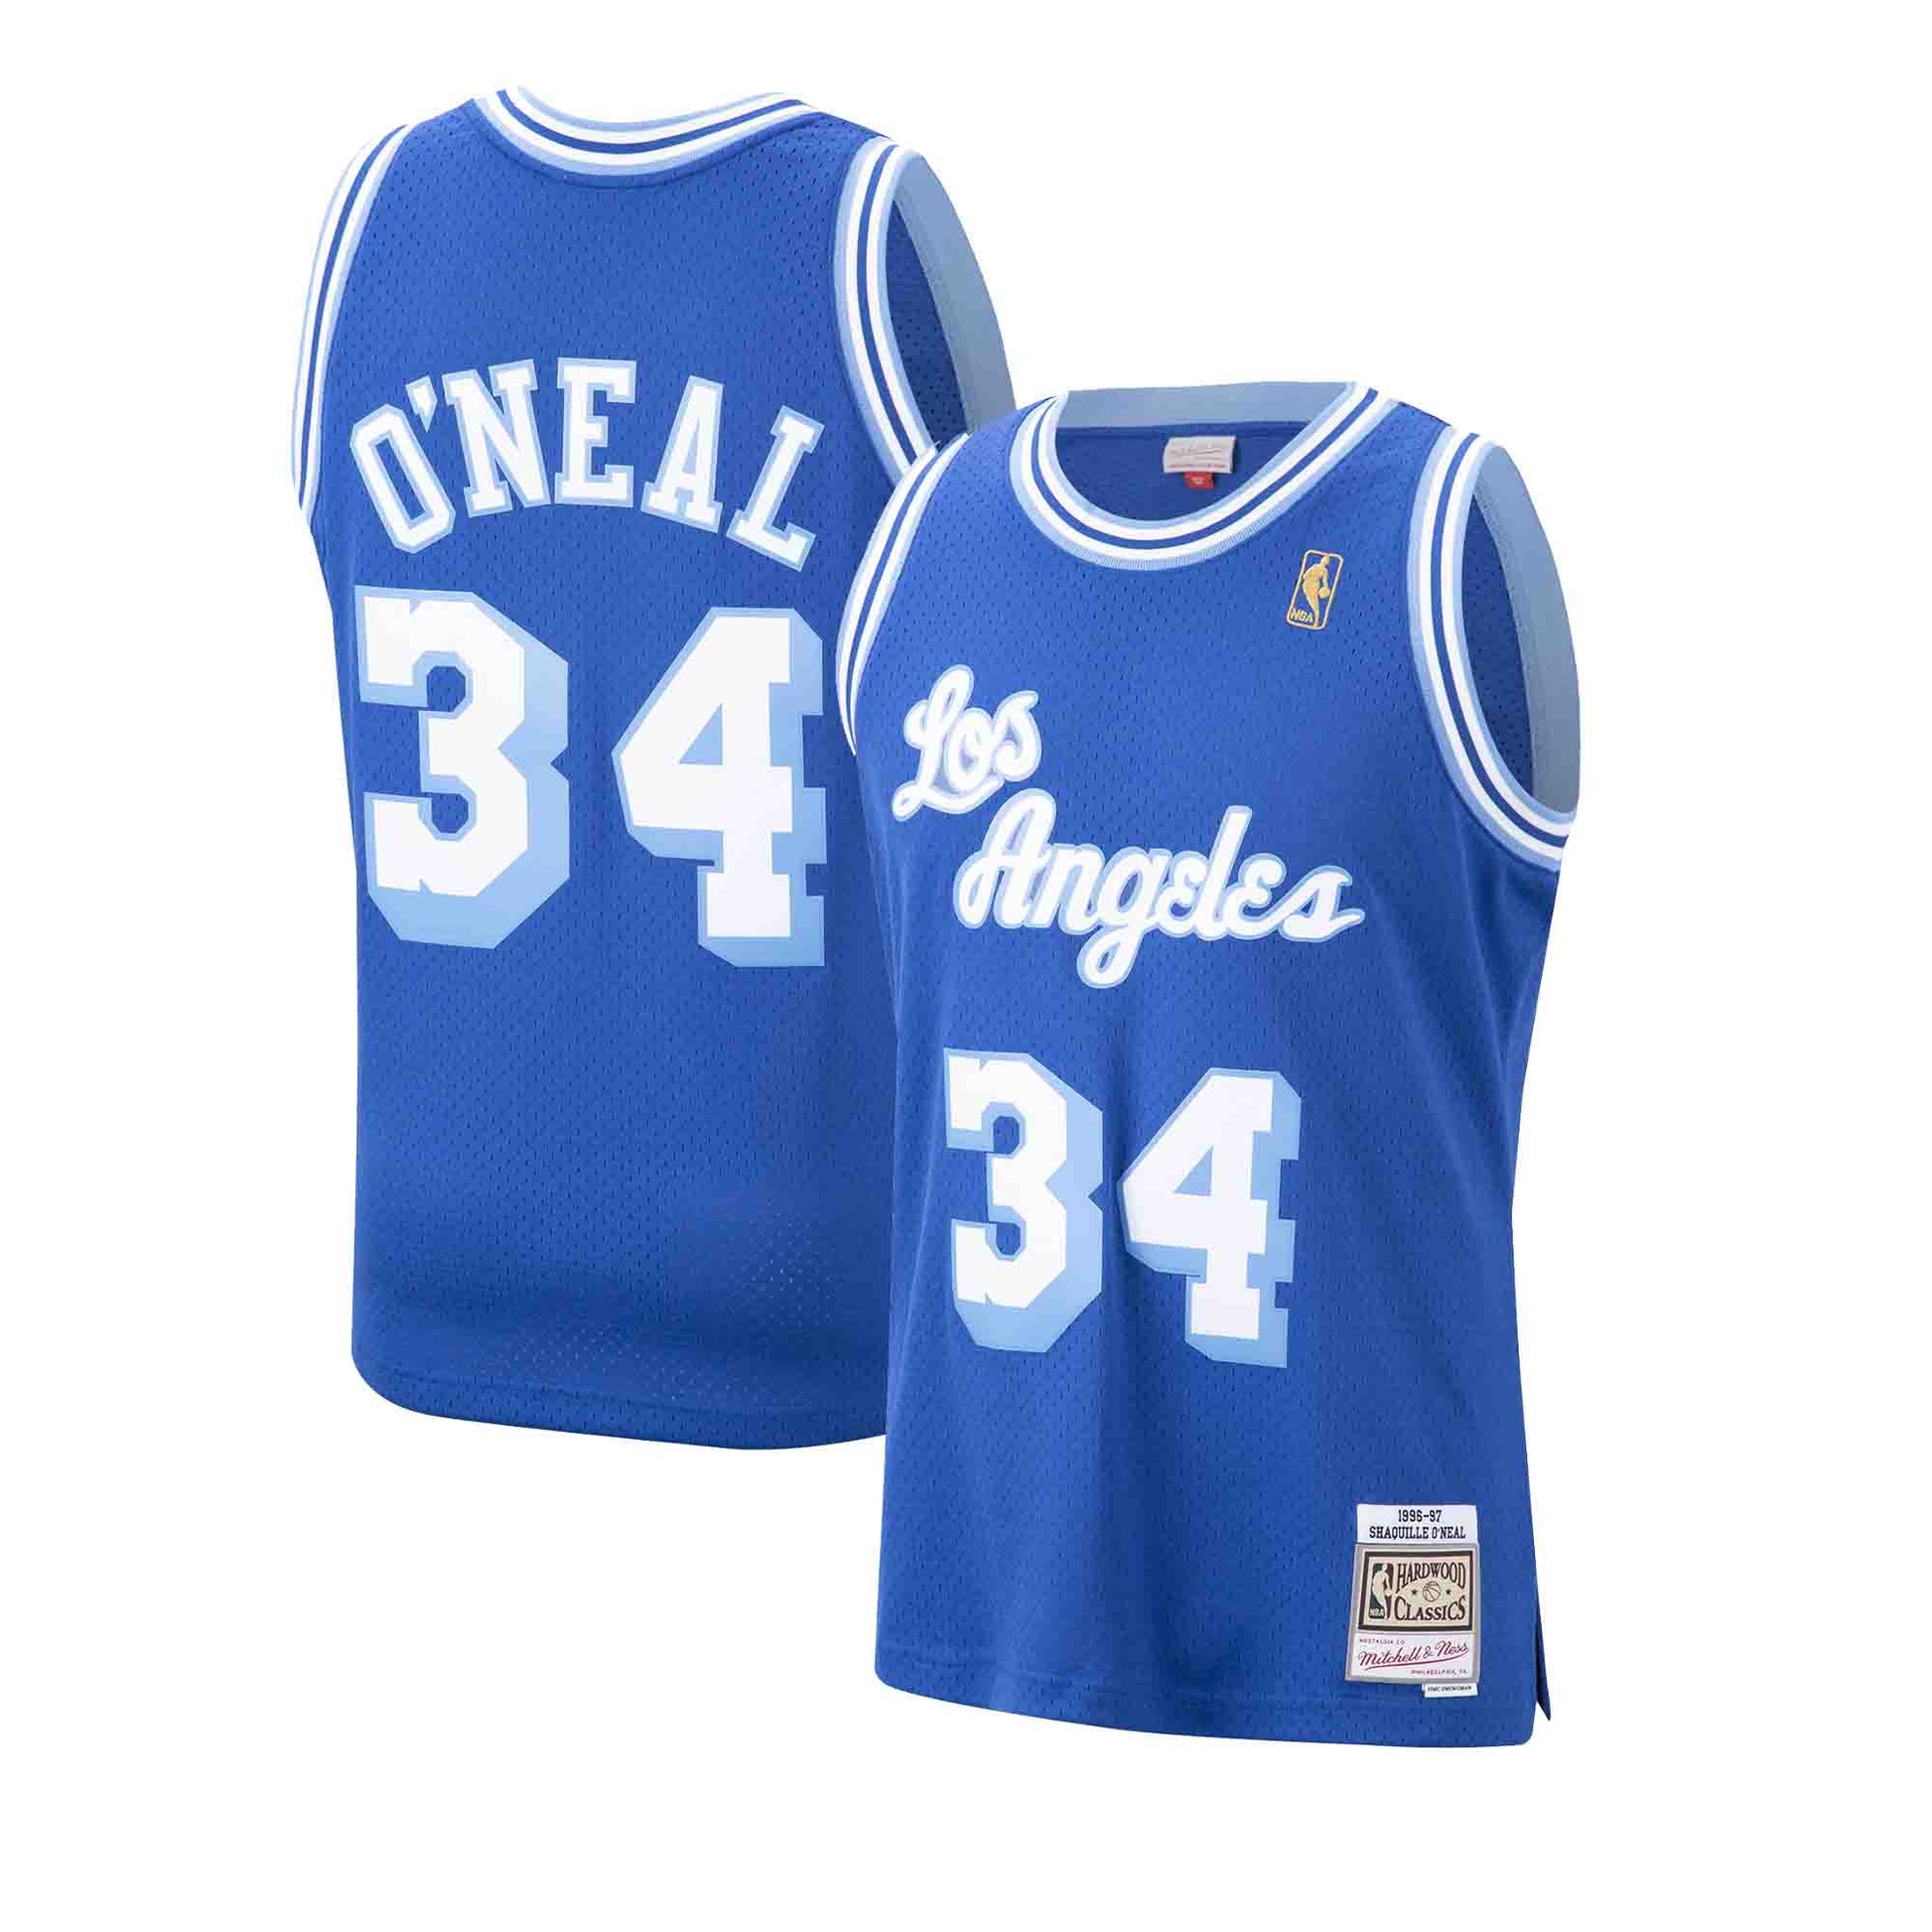 Shaquille O'Neal Camo Swingman NBA 96-97 Jersey